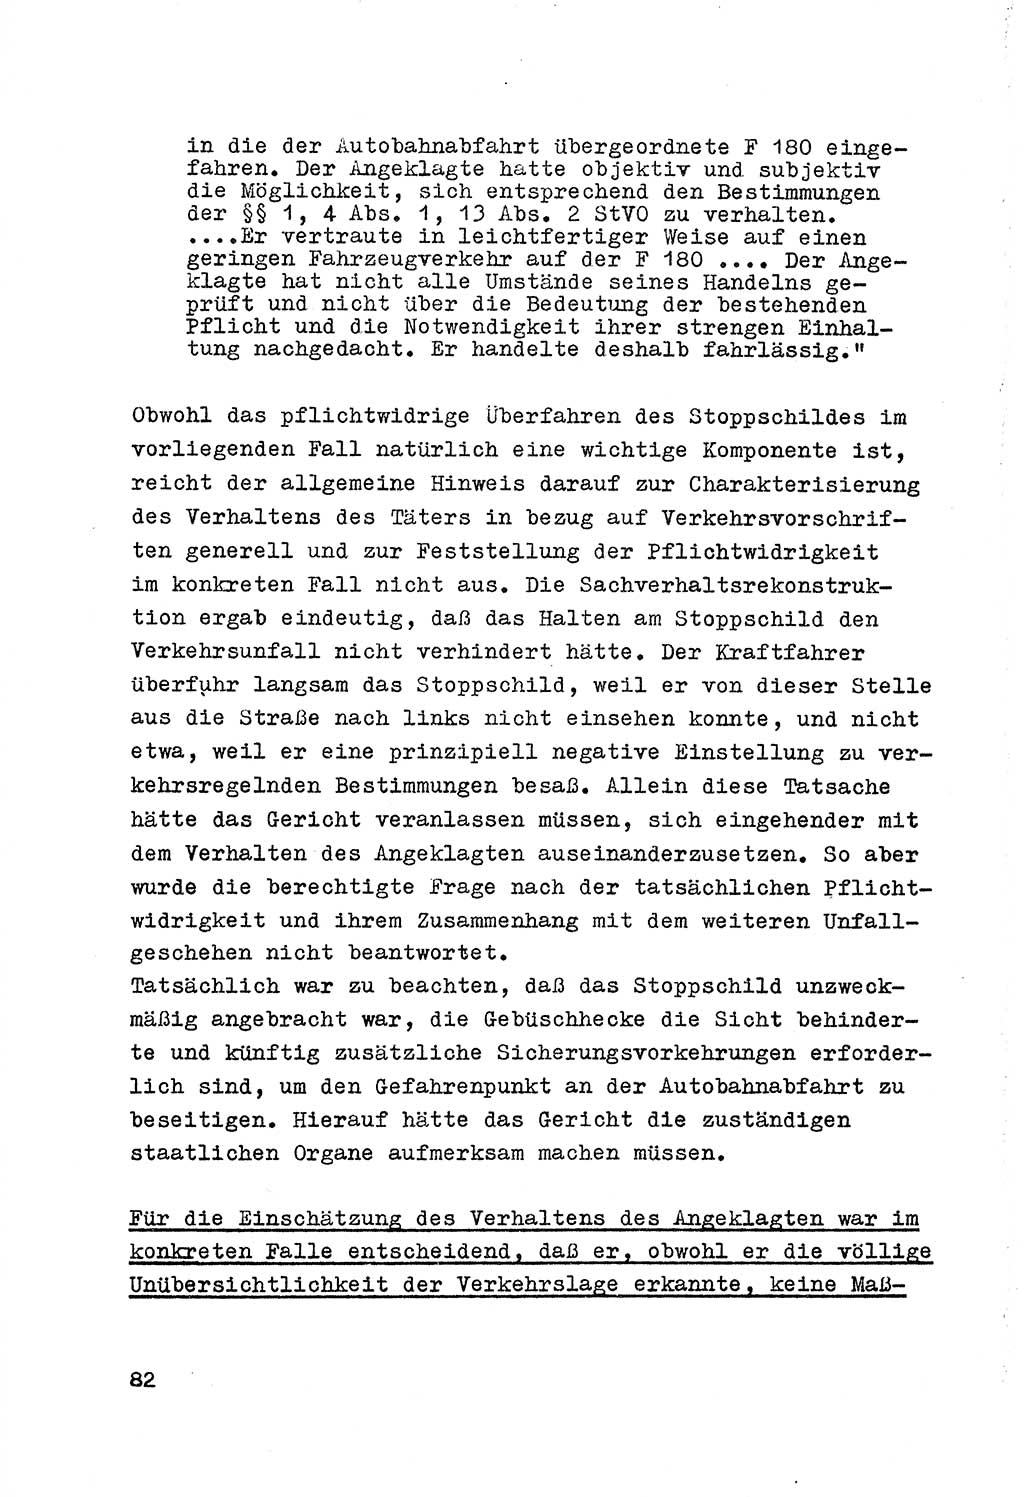 Strafrecht der DDR (Deutsche Demokratische Republik), Besonderer Teil, Lehrmaterial, Heft 7 1970, Seite 82 (Strafr. DDR BT Lehrmat. H. 7 1970, S. 82)